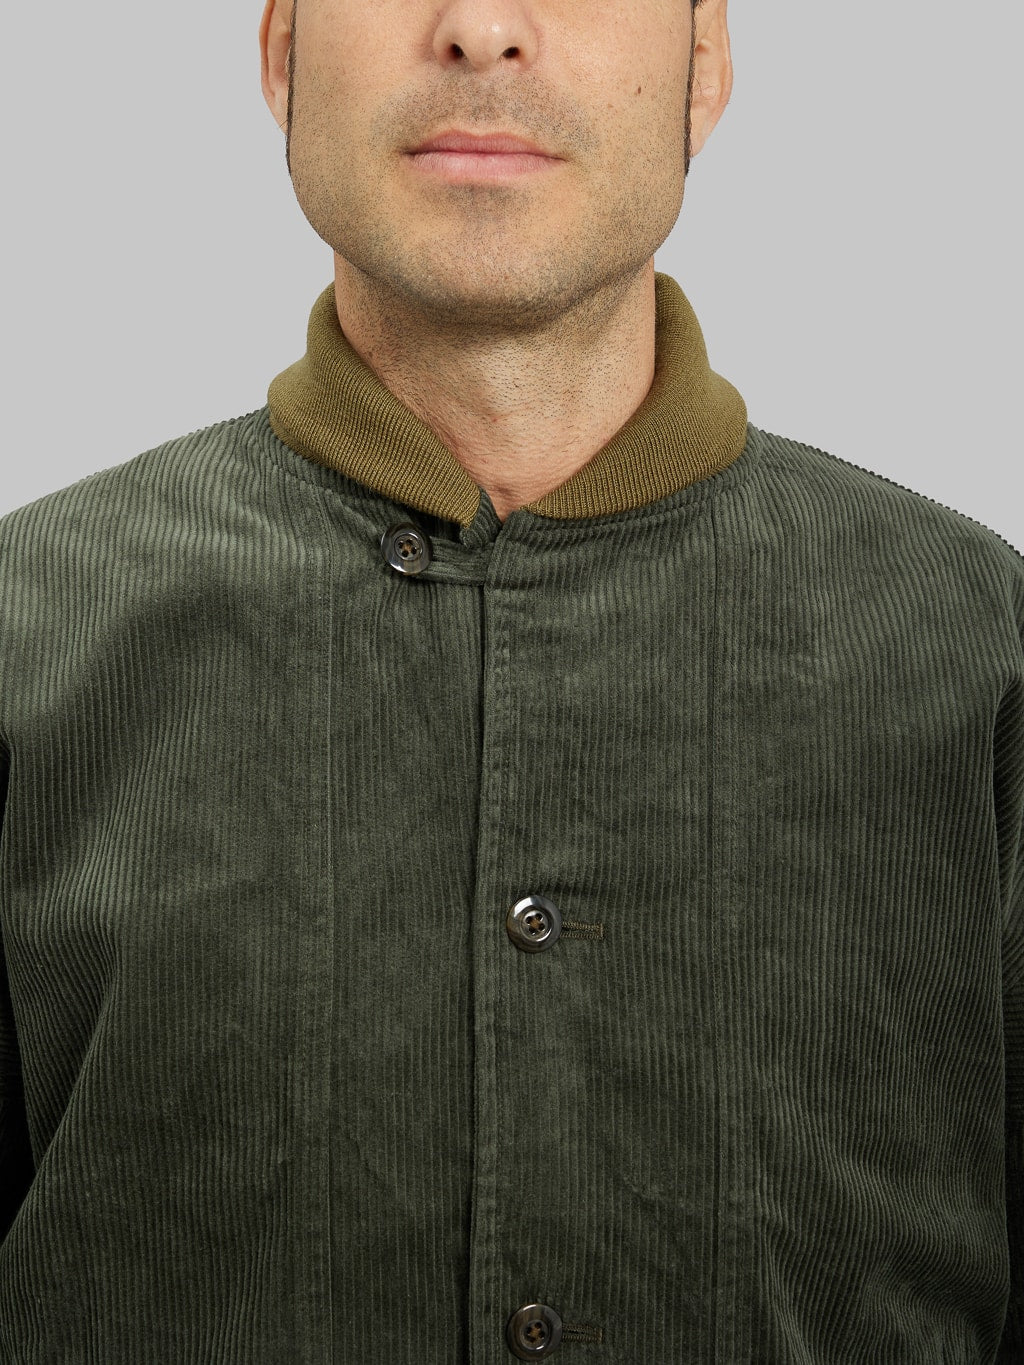 Tanuki Sazanami Corduroy Bayberry Dyed Green Jacket button collar